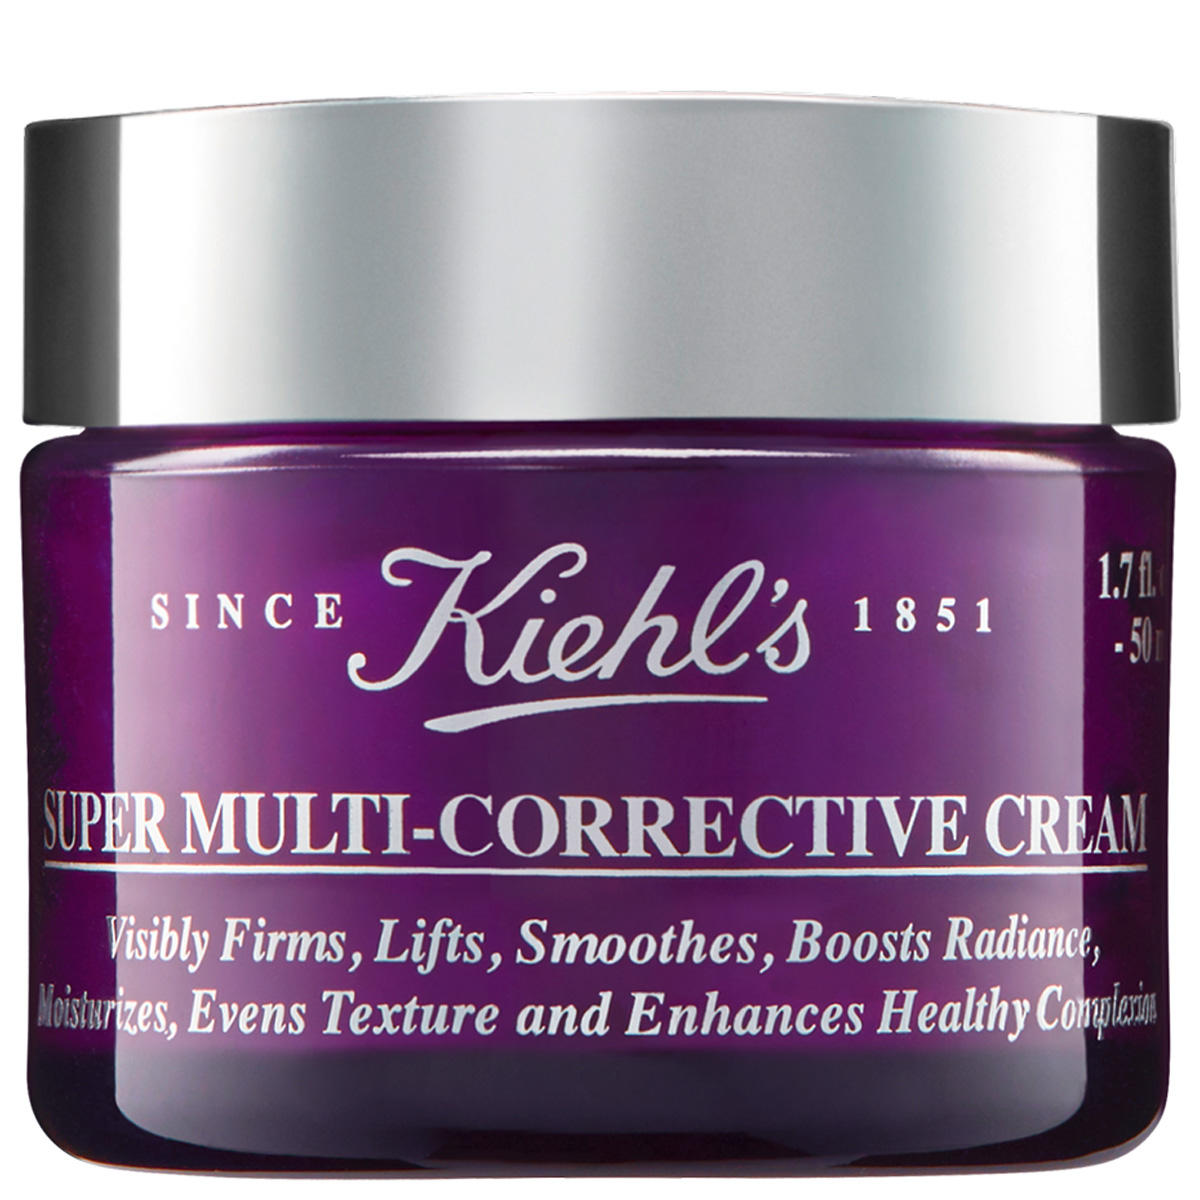 Kiehl's Super Multi-Corrective Cream  - 1